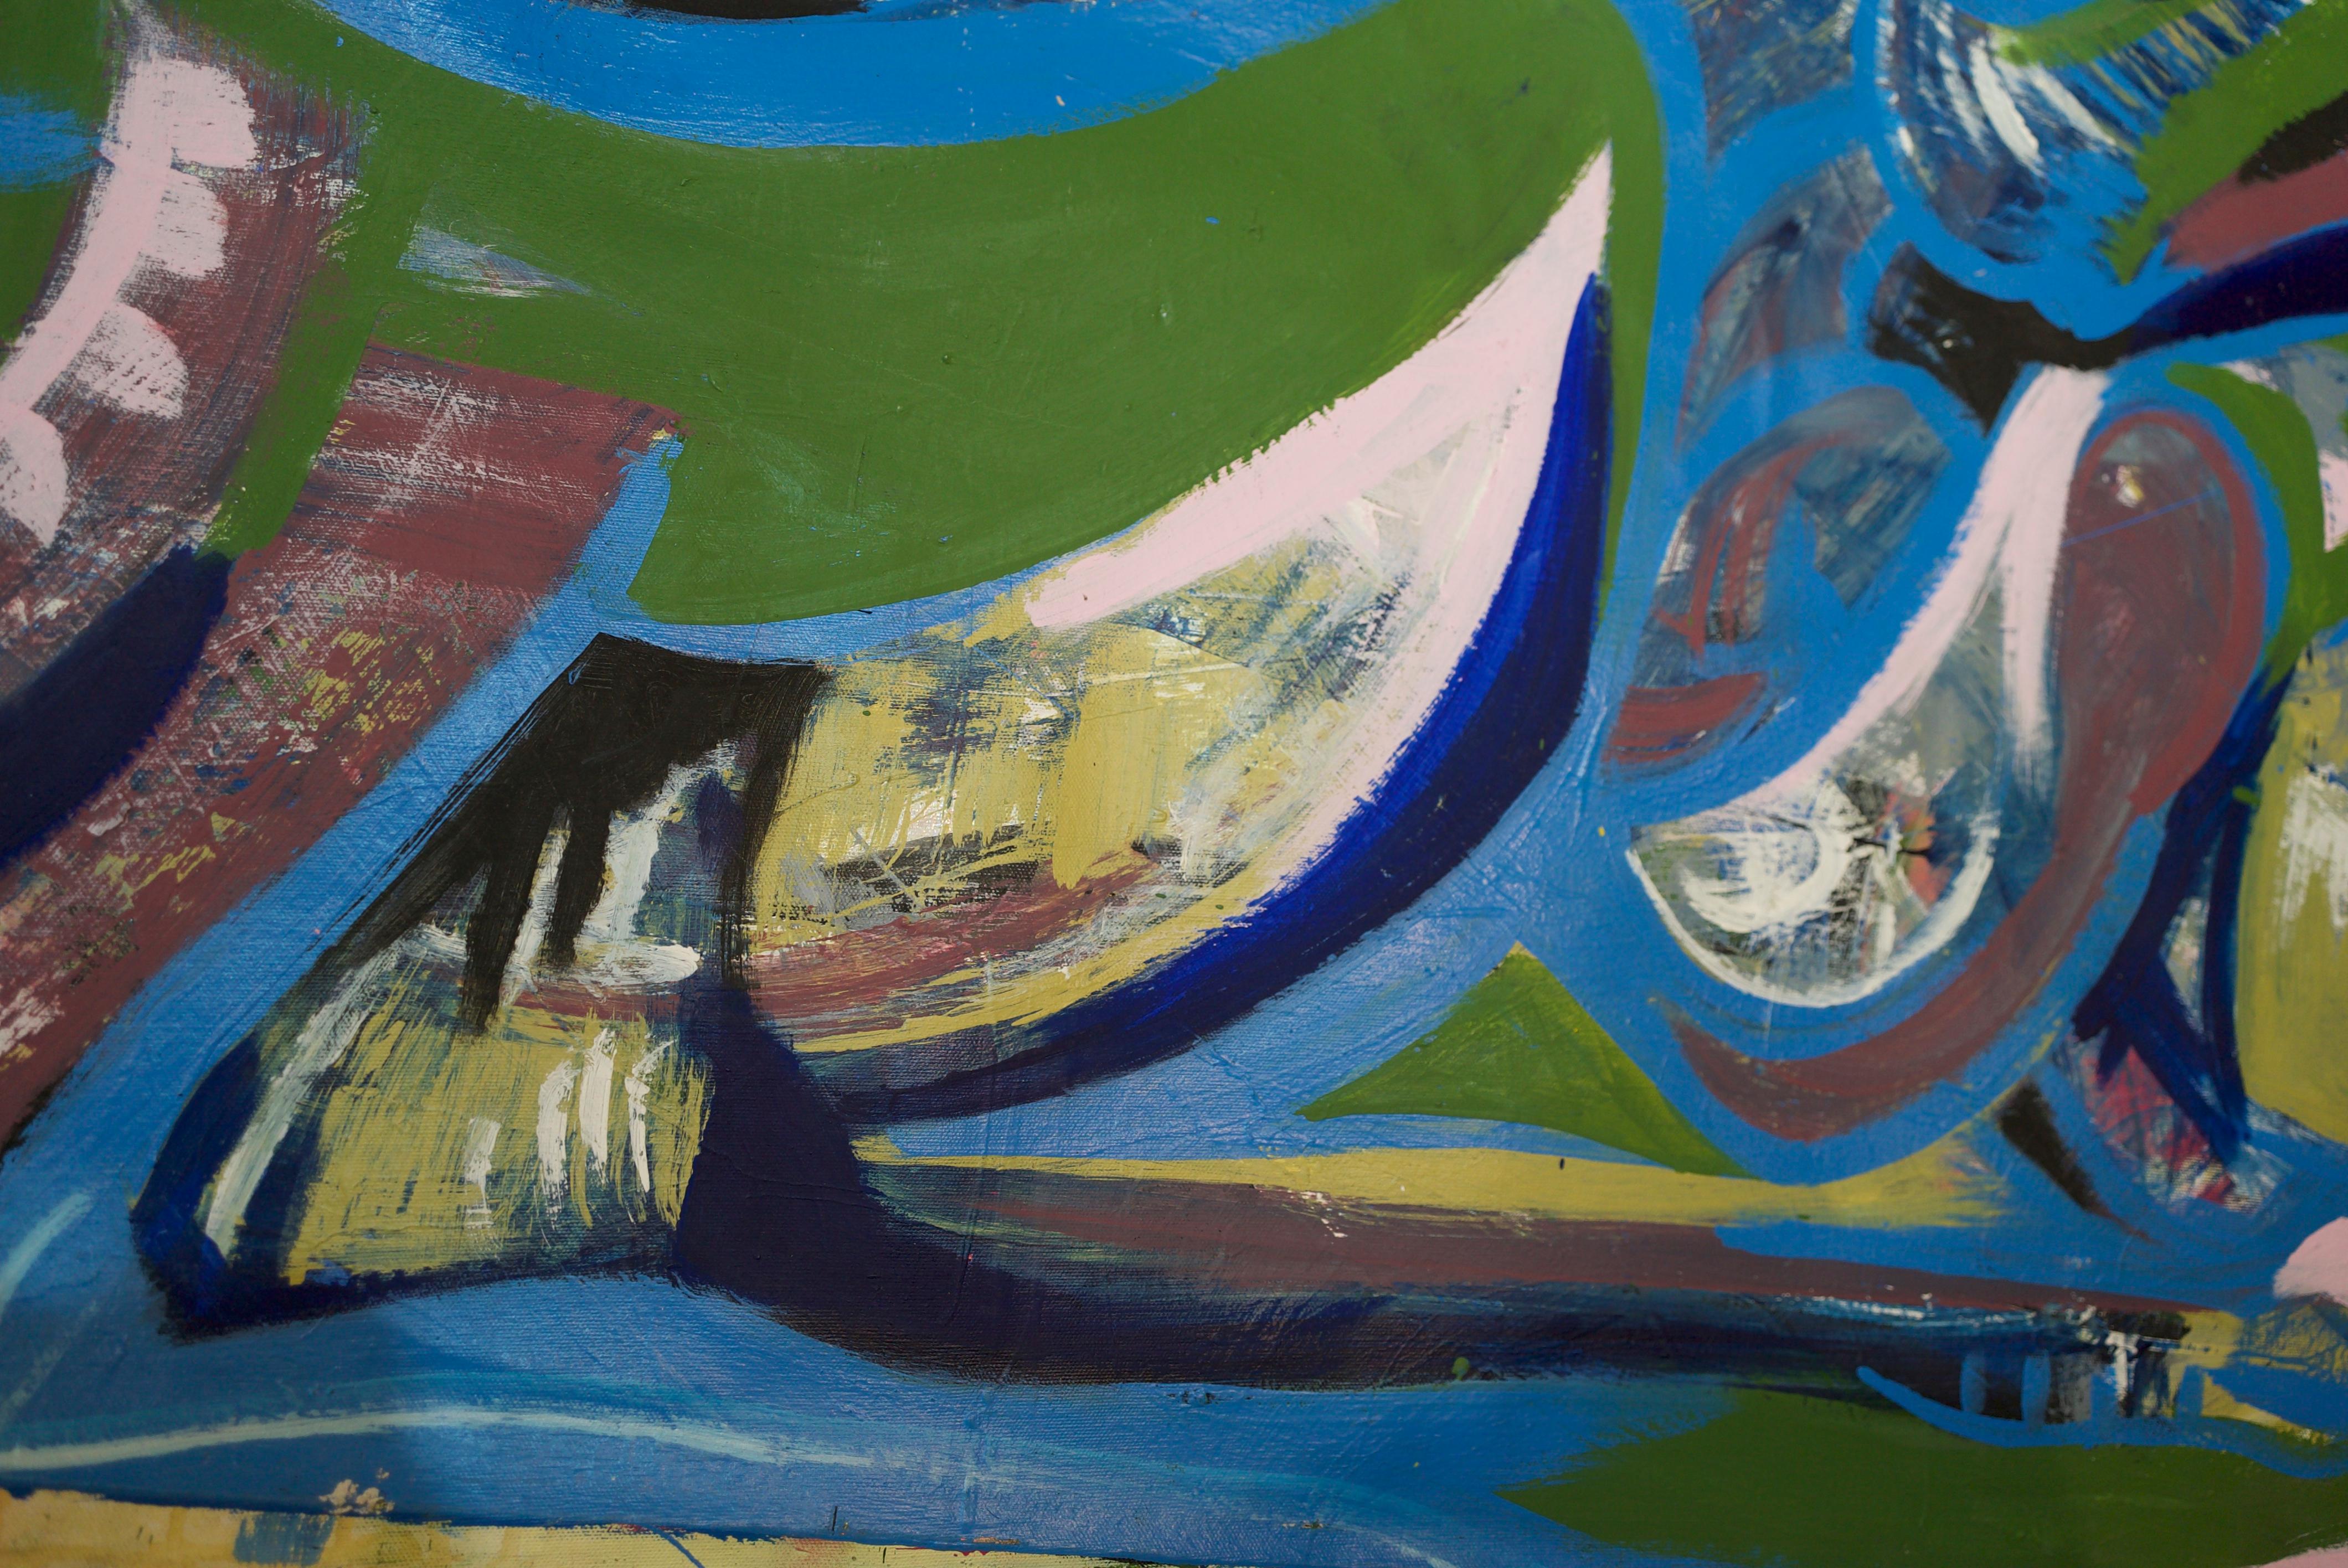 Jungla, Art contemporain, Peinture abstraite, 21ème siècle - Abstrait Painting par Fernando Esteban